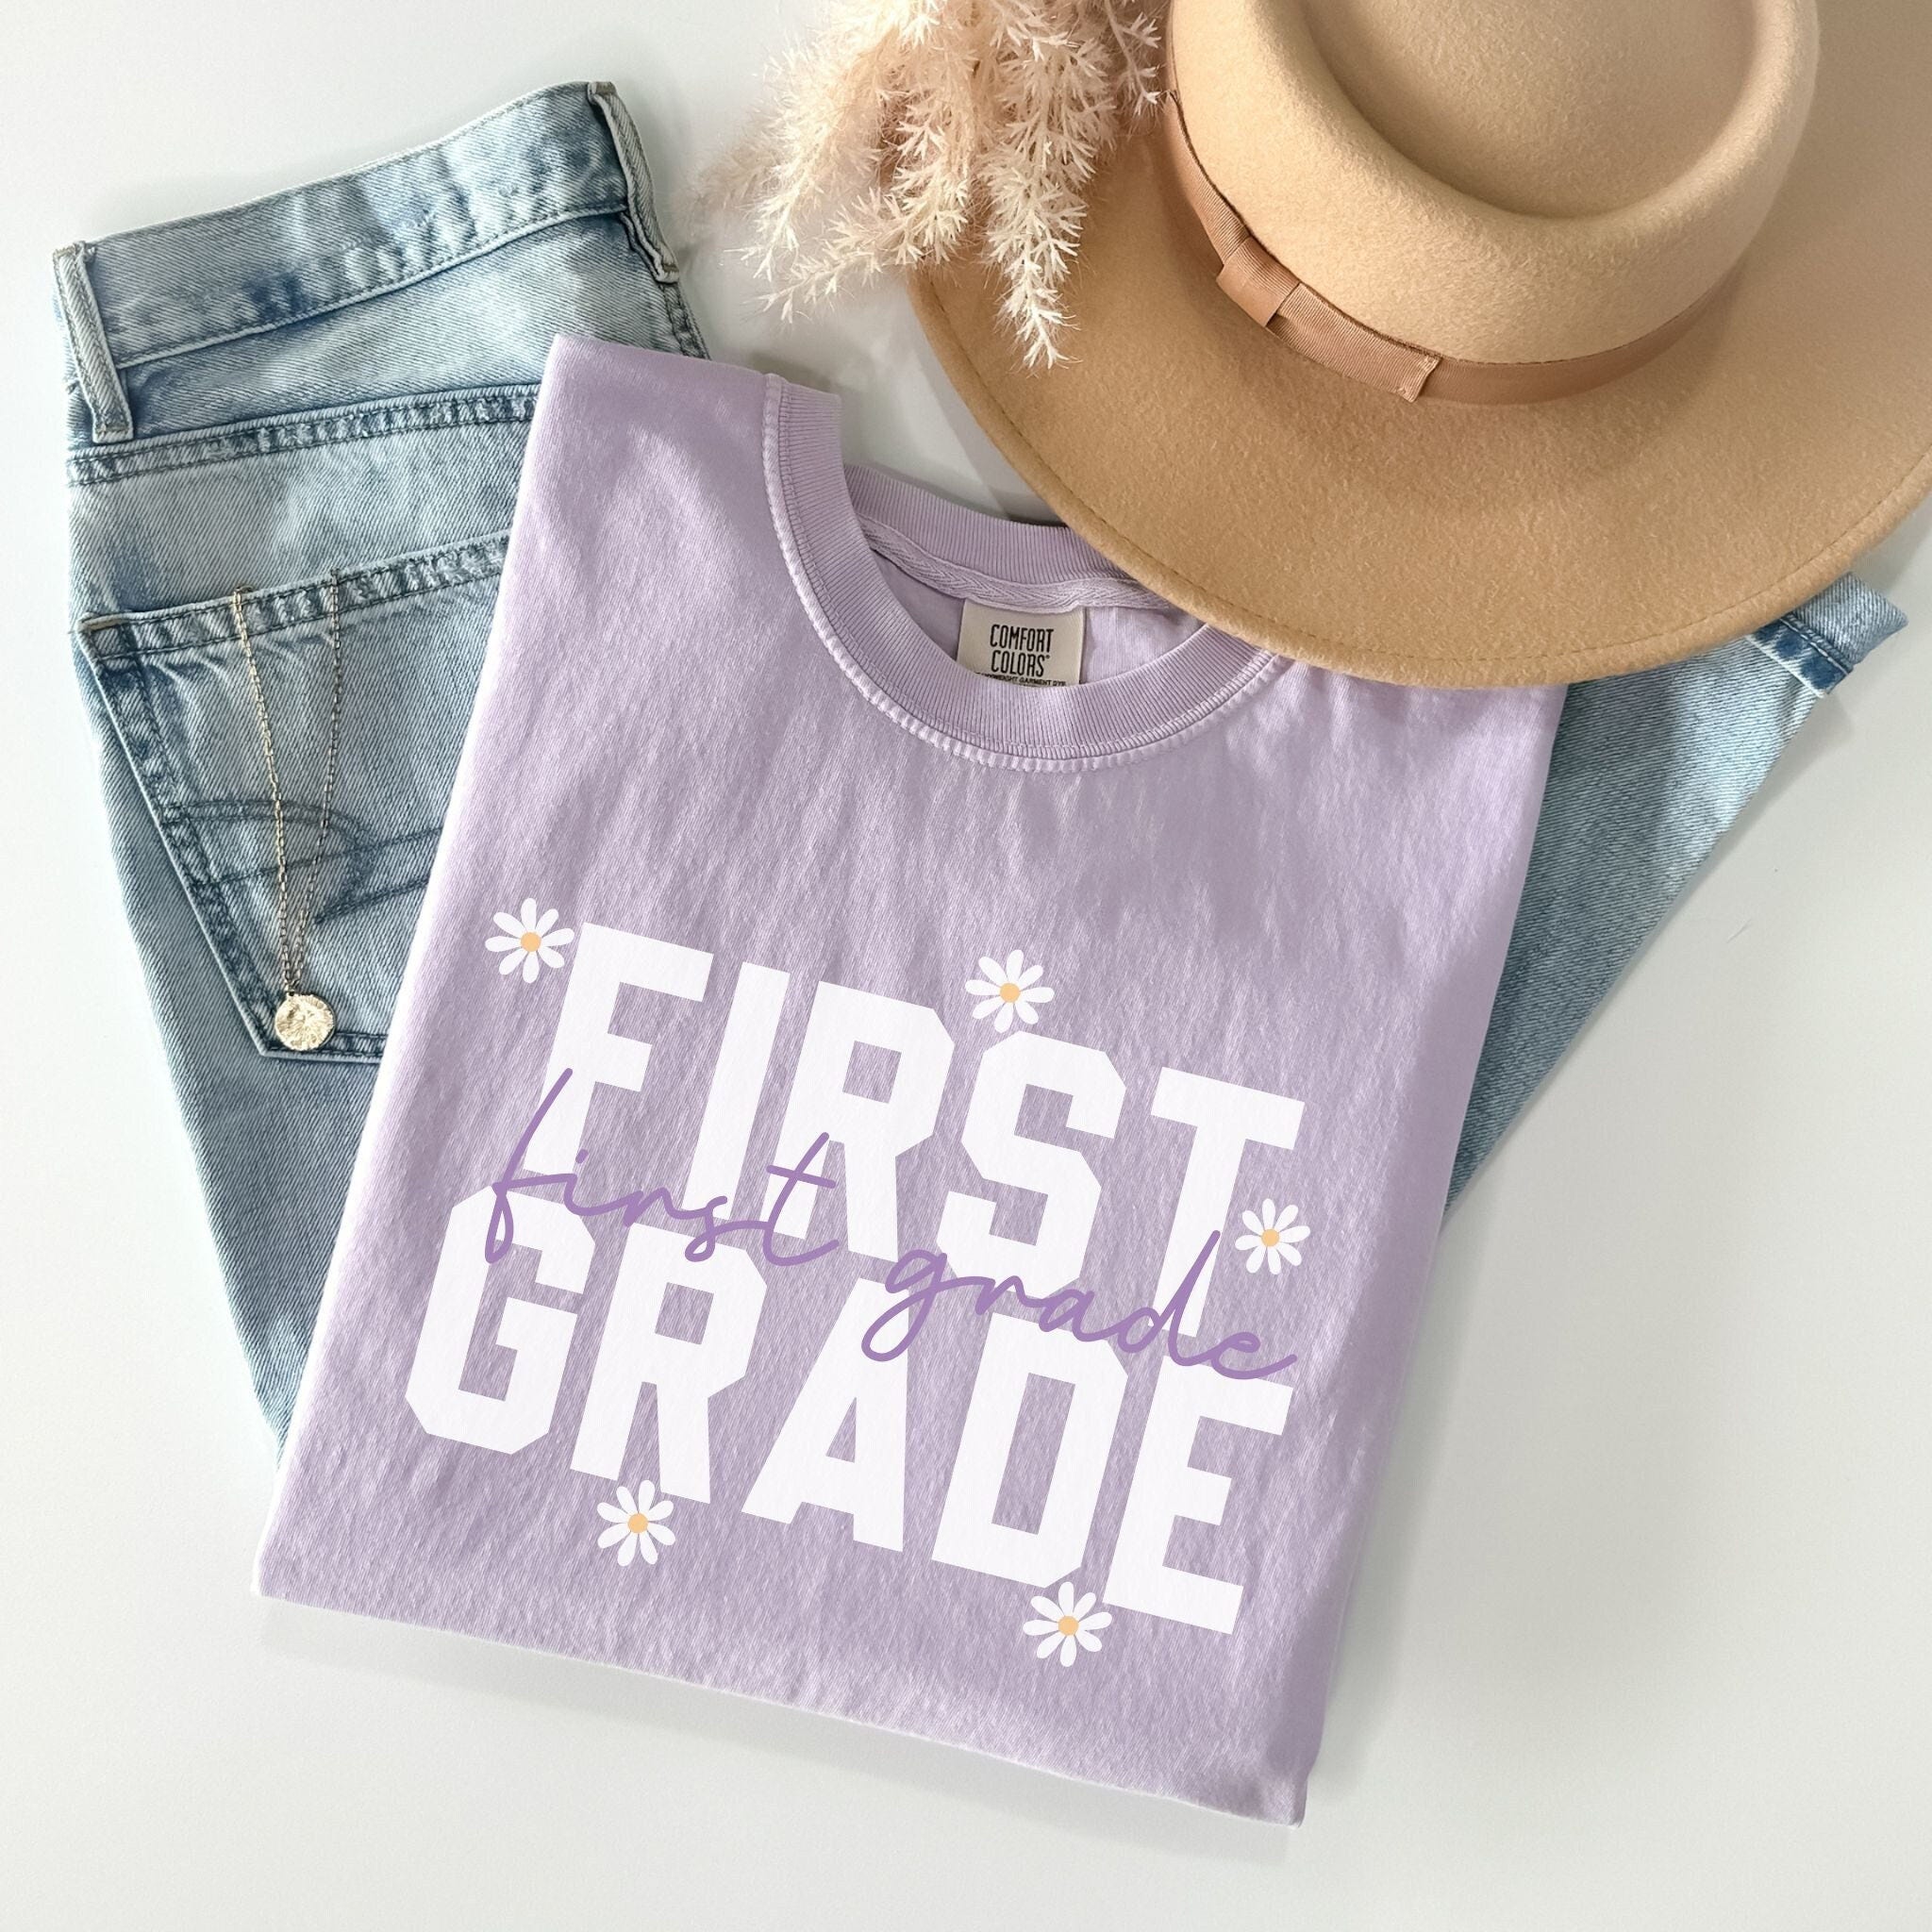 Comfort Colors First Grade Shirt, 1st Grade Teacher Shirts, First Grade Teacher Back to School T-Shirt, First Grade Team, Teacher Gifts